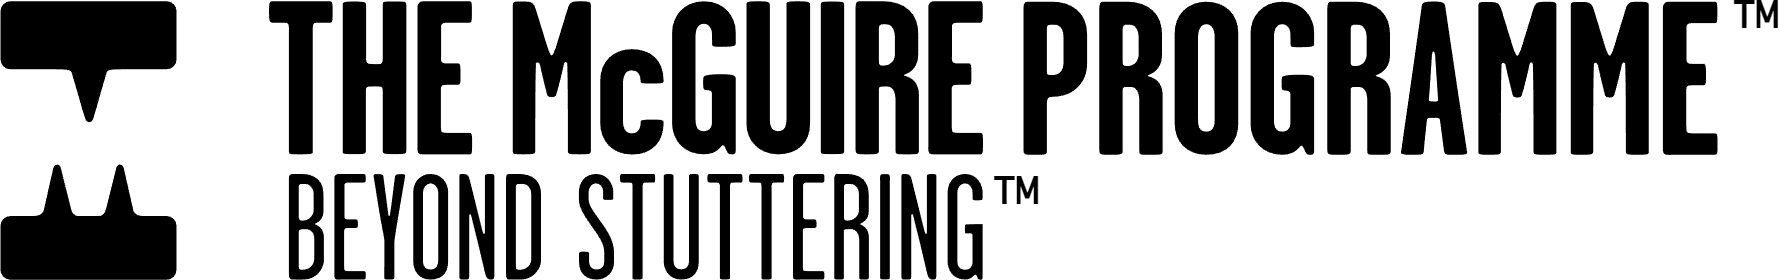 McGuire Programme Dark Logo